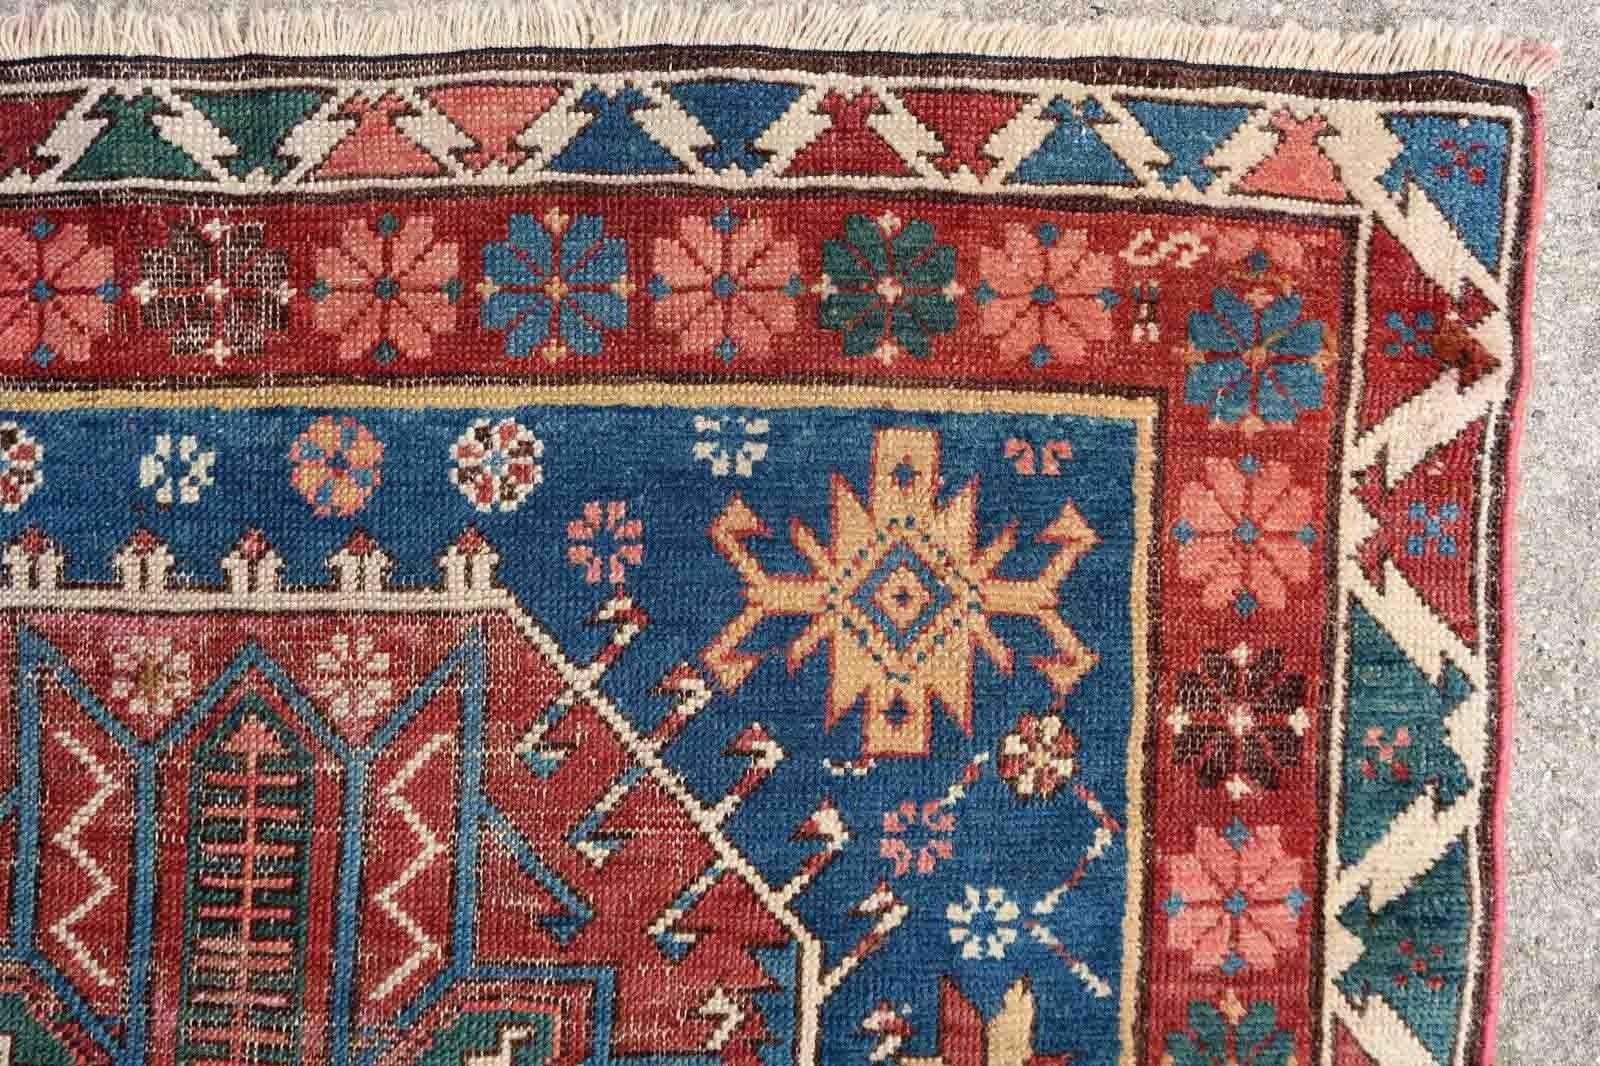 Handgefertigter antiker Teppich aus der kaukasischen Region Schirwan in blauen und roten Farben. Der Teppich hat zwei verschiedene Blautöne auf dem Hintergrund. Der Teppich stammt aus dem Ende des 19. Jahrhunderts und ist in schlechtem Zustand, er